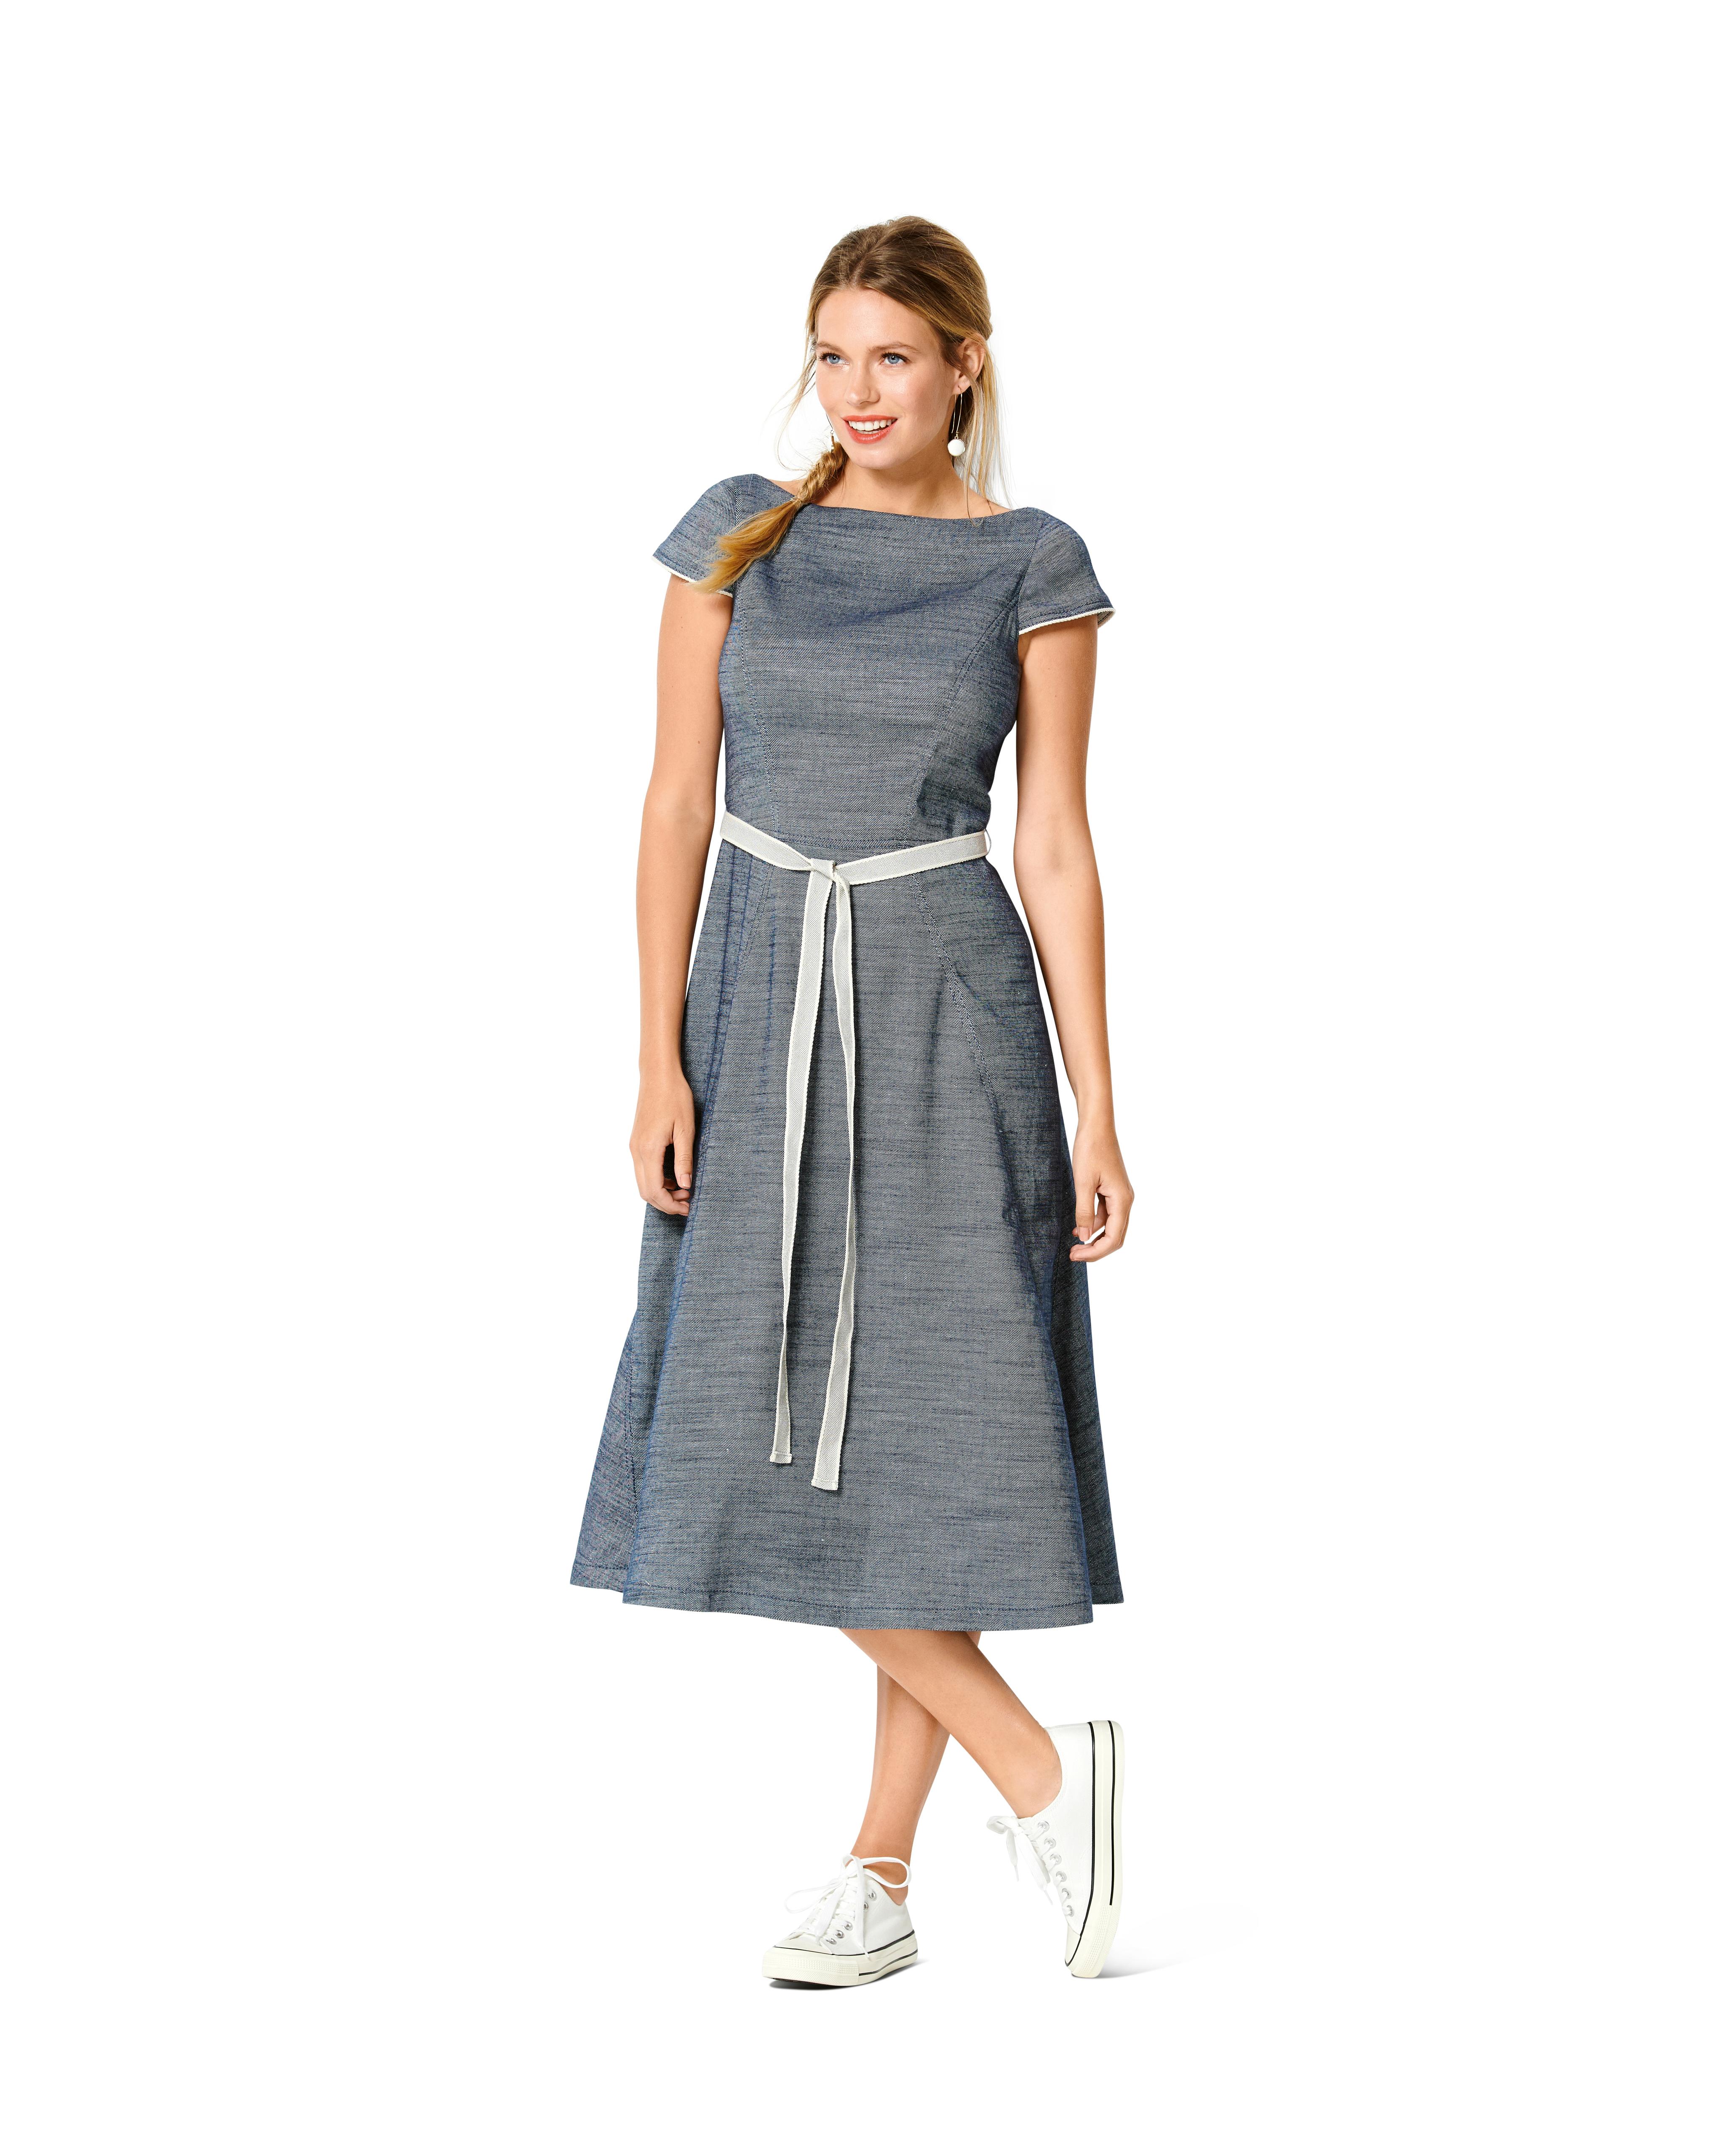 Burda B6209 Dress Sewing Pattern